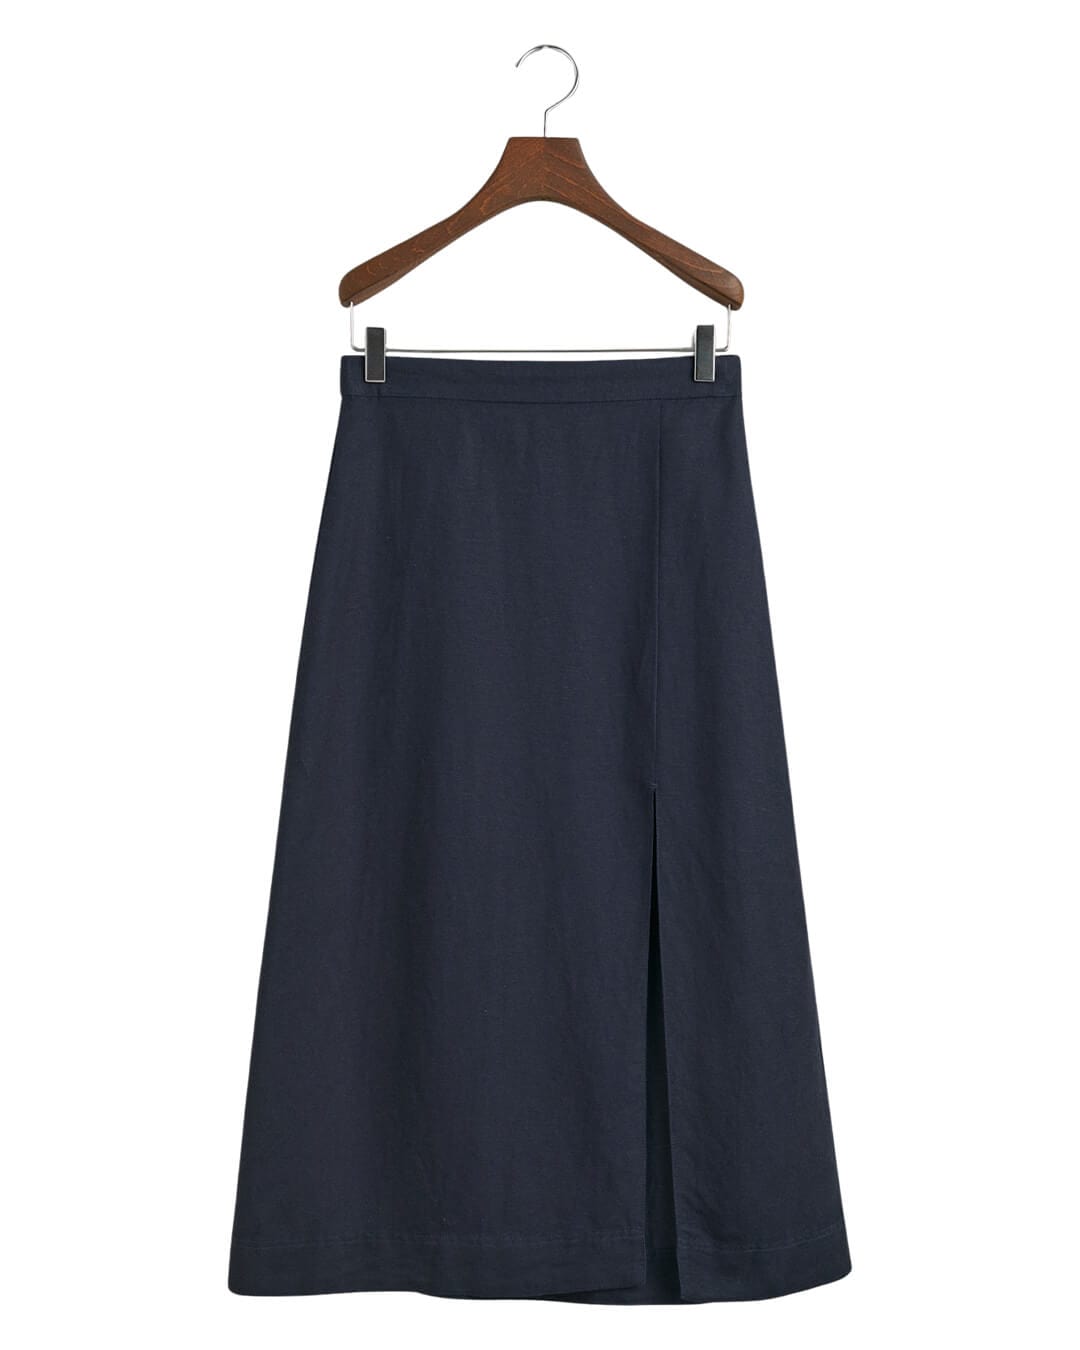 Gant Skirts Gant Navy Relaxed Midi Linen Blend Skirt